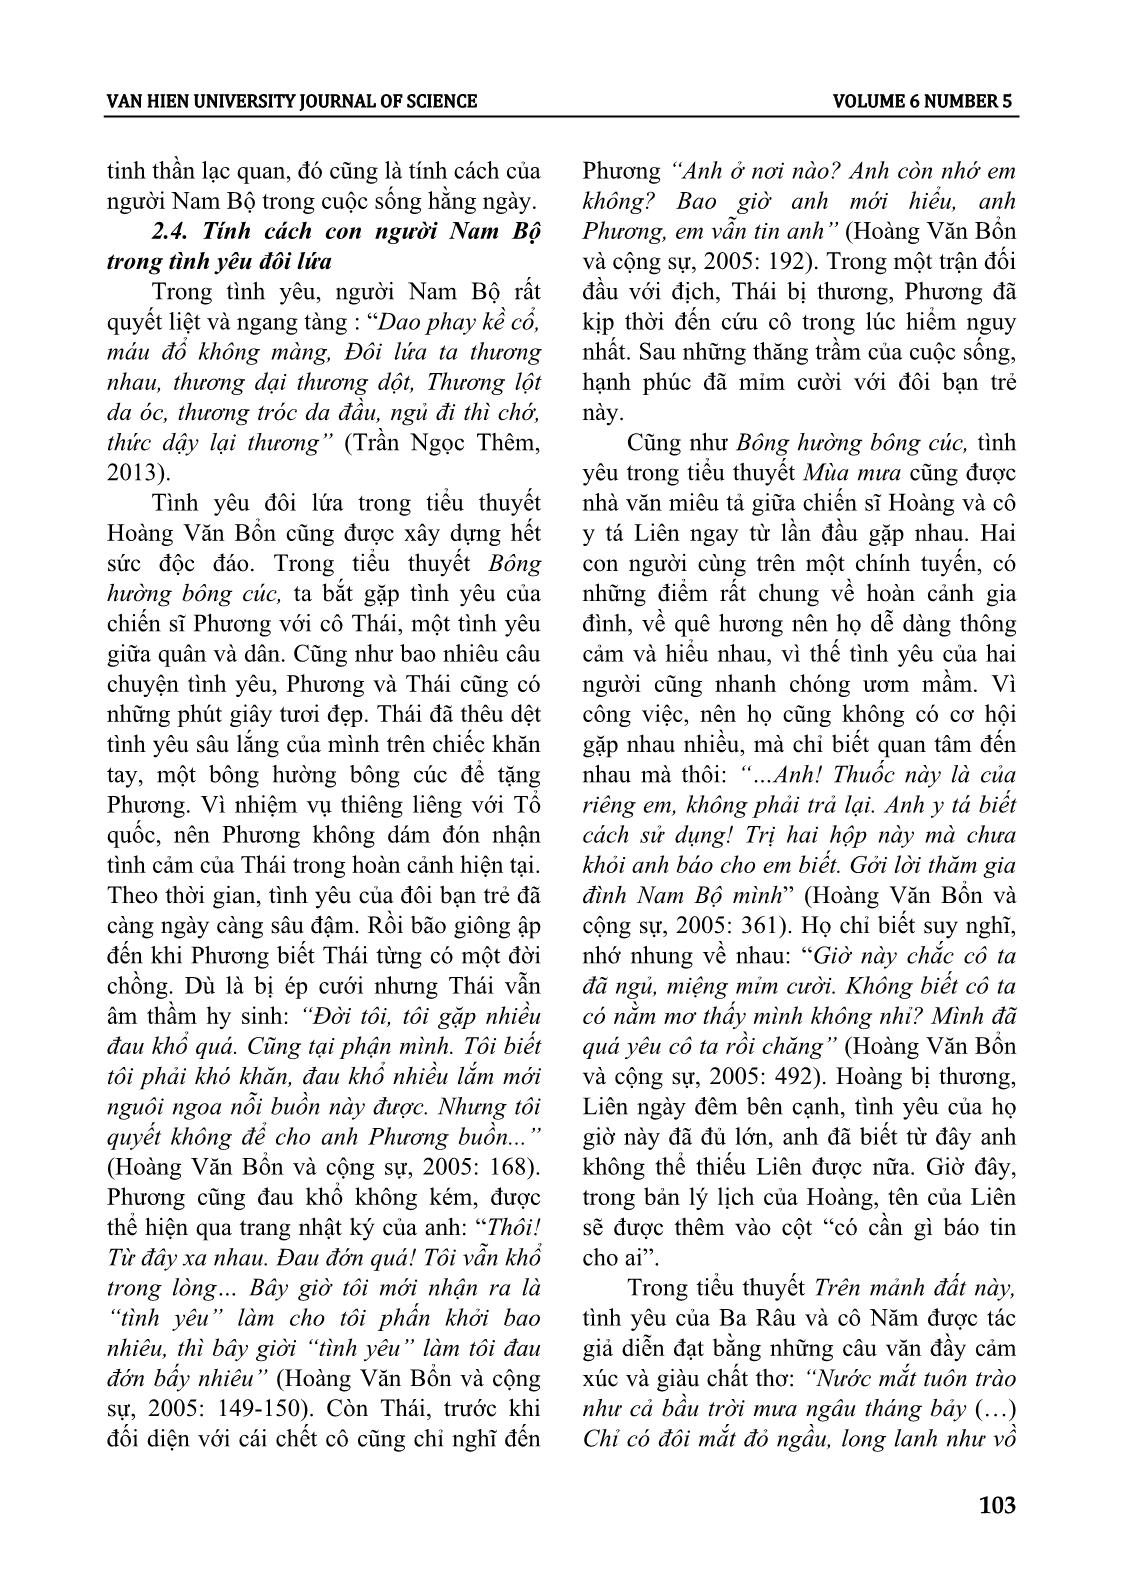 Tính cách con người nam bộ trong tiểu thuyết Hoàng Văn Bổn giai đoạn 1955 - 1975 trang 7